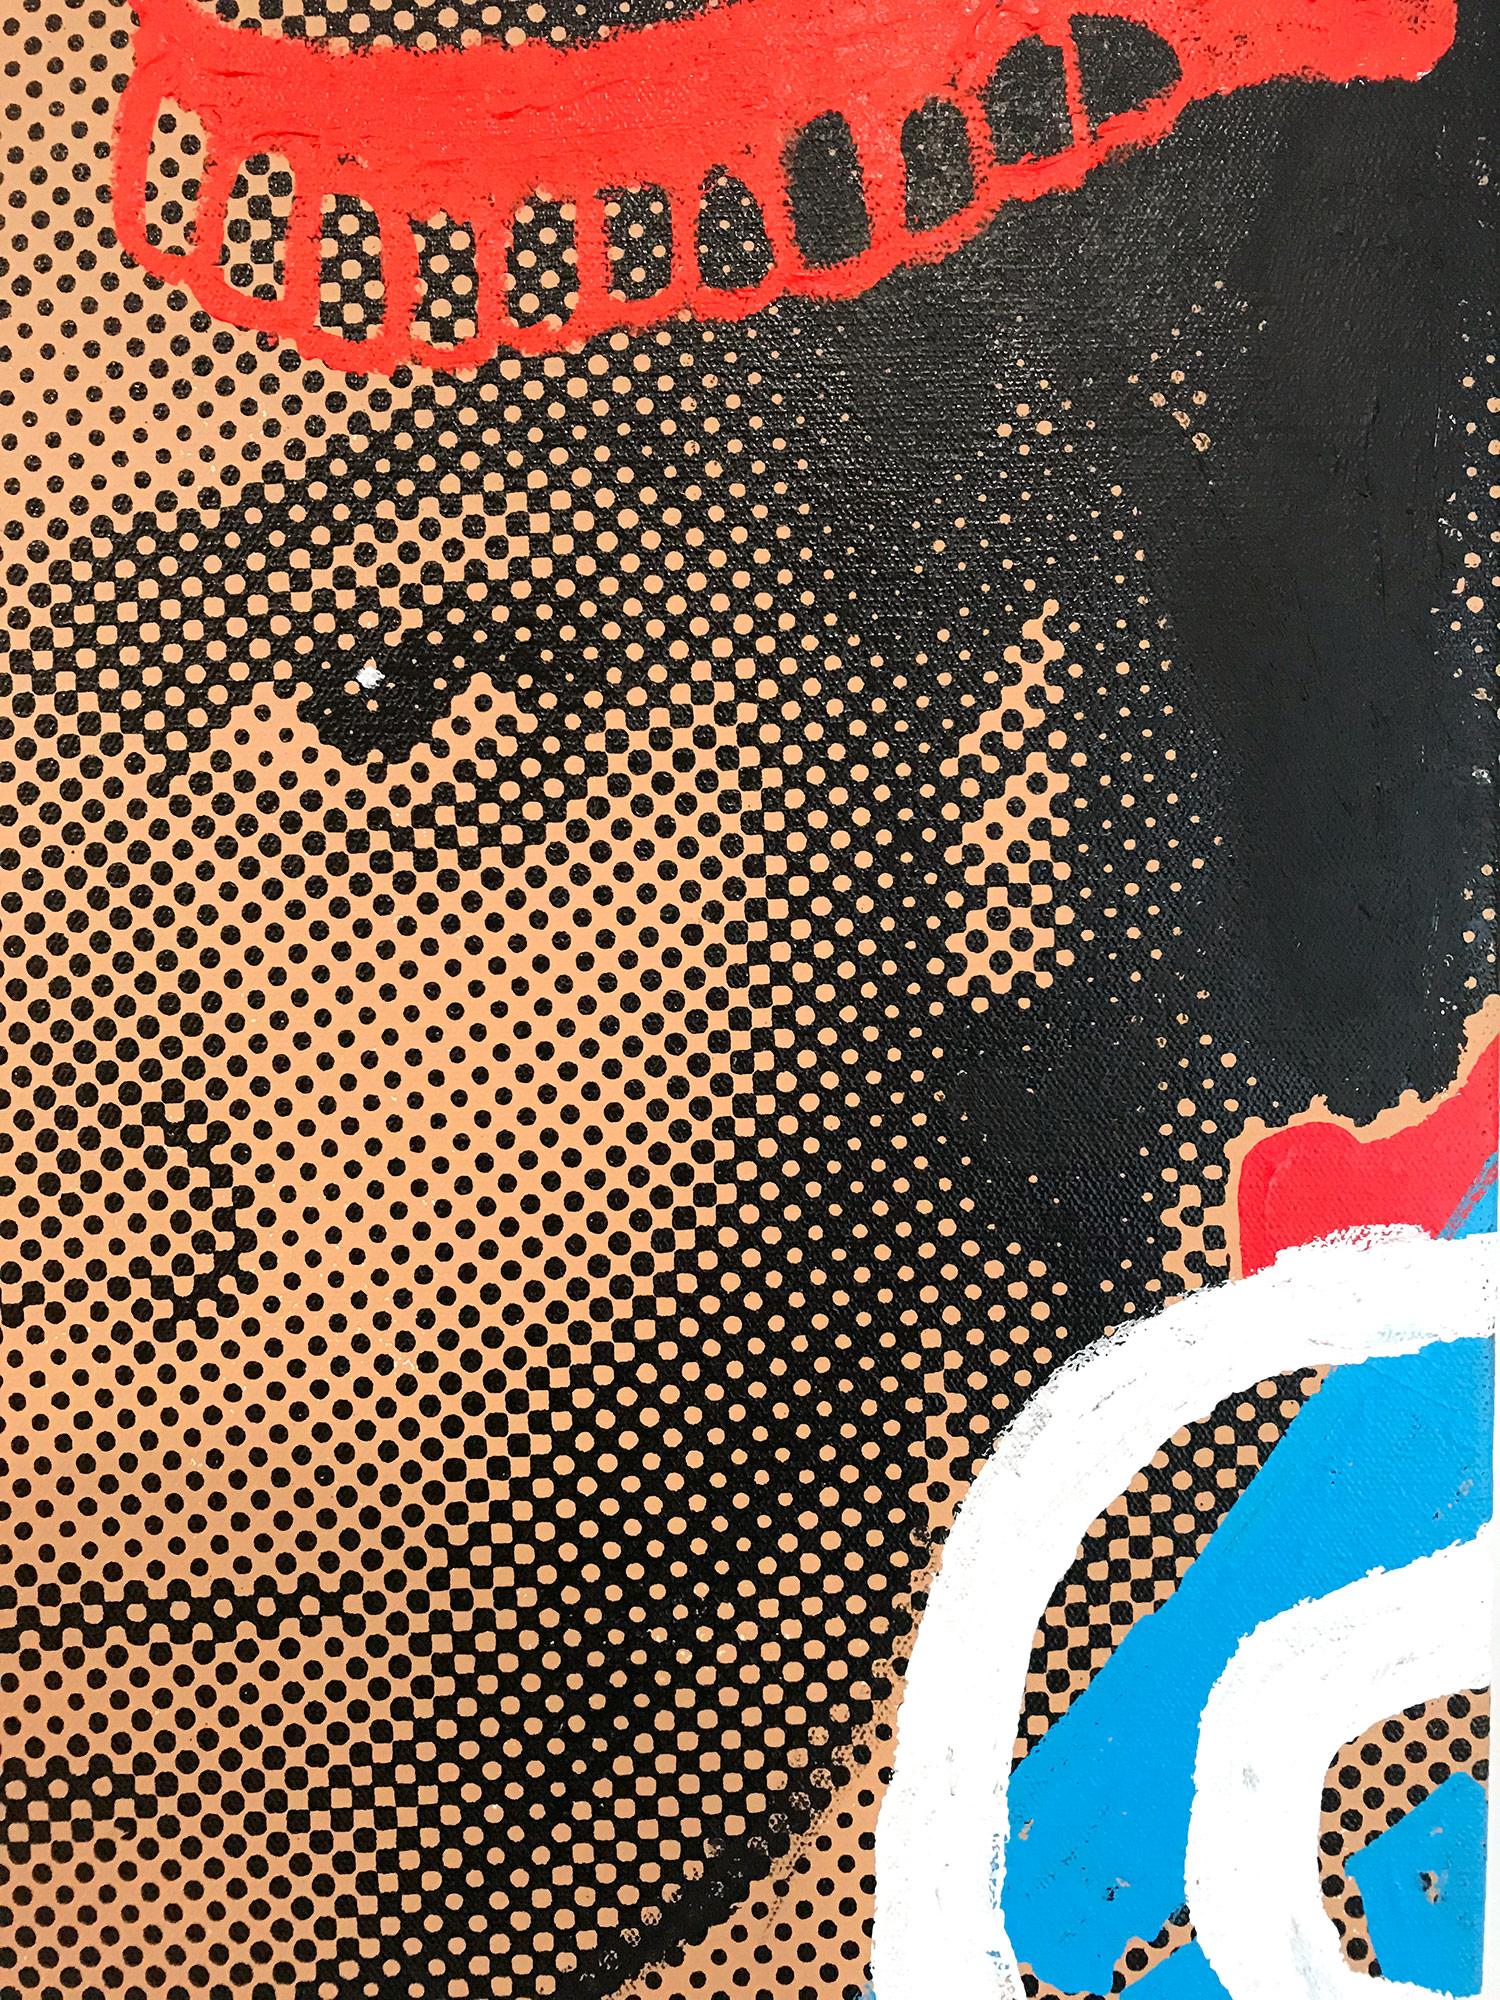 Ein Popstück, das Basquiat/Samo darstellt. Bei der Impasto-Malerei und dem Siebdruck werden wir von der Bewegung angezogen, da der Künstler in der Lage ist, den Betrachter mit kontrastierenden Lichtern und Schatten zu beschäftigen. Dieses Werk ist